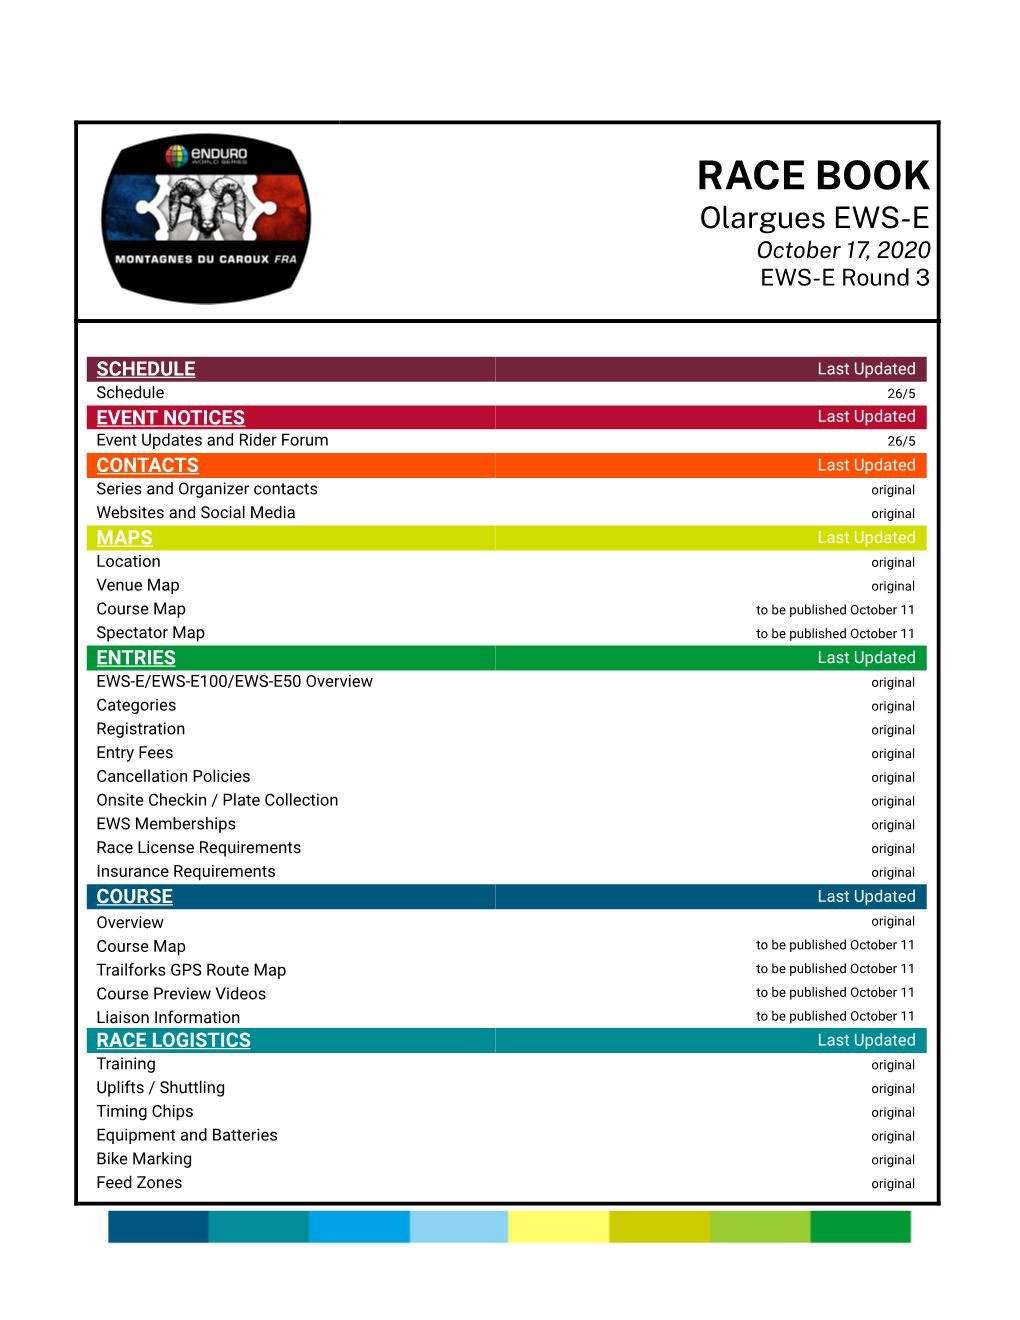 RACE BOOK Olargues EWS-E October 17, 2020 EWS-E Round 3